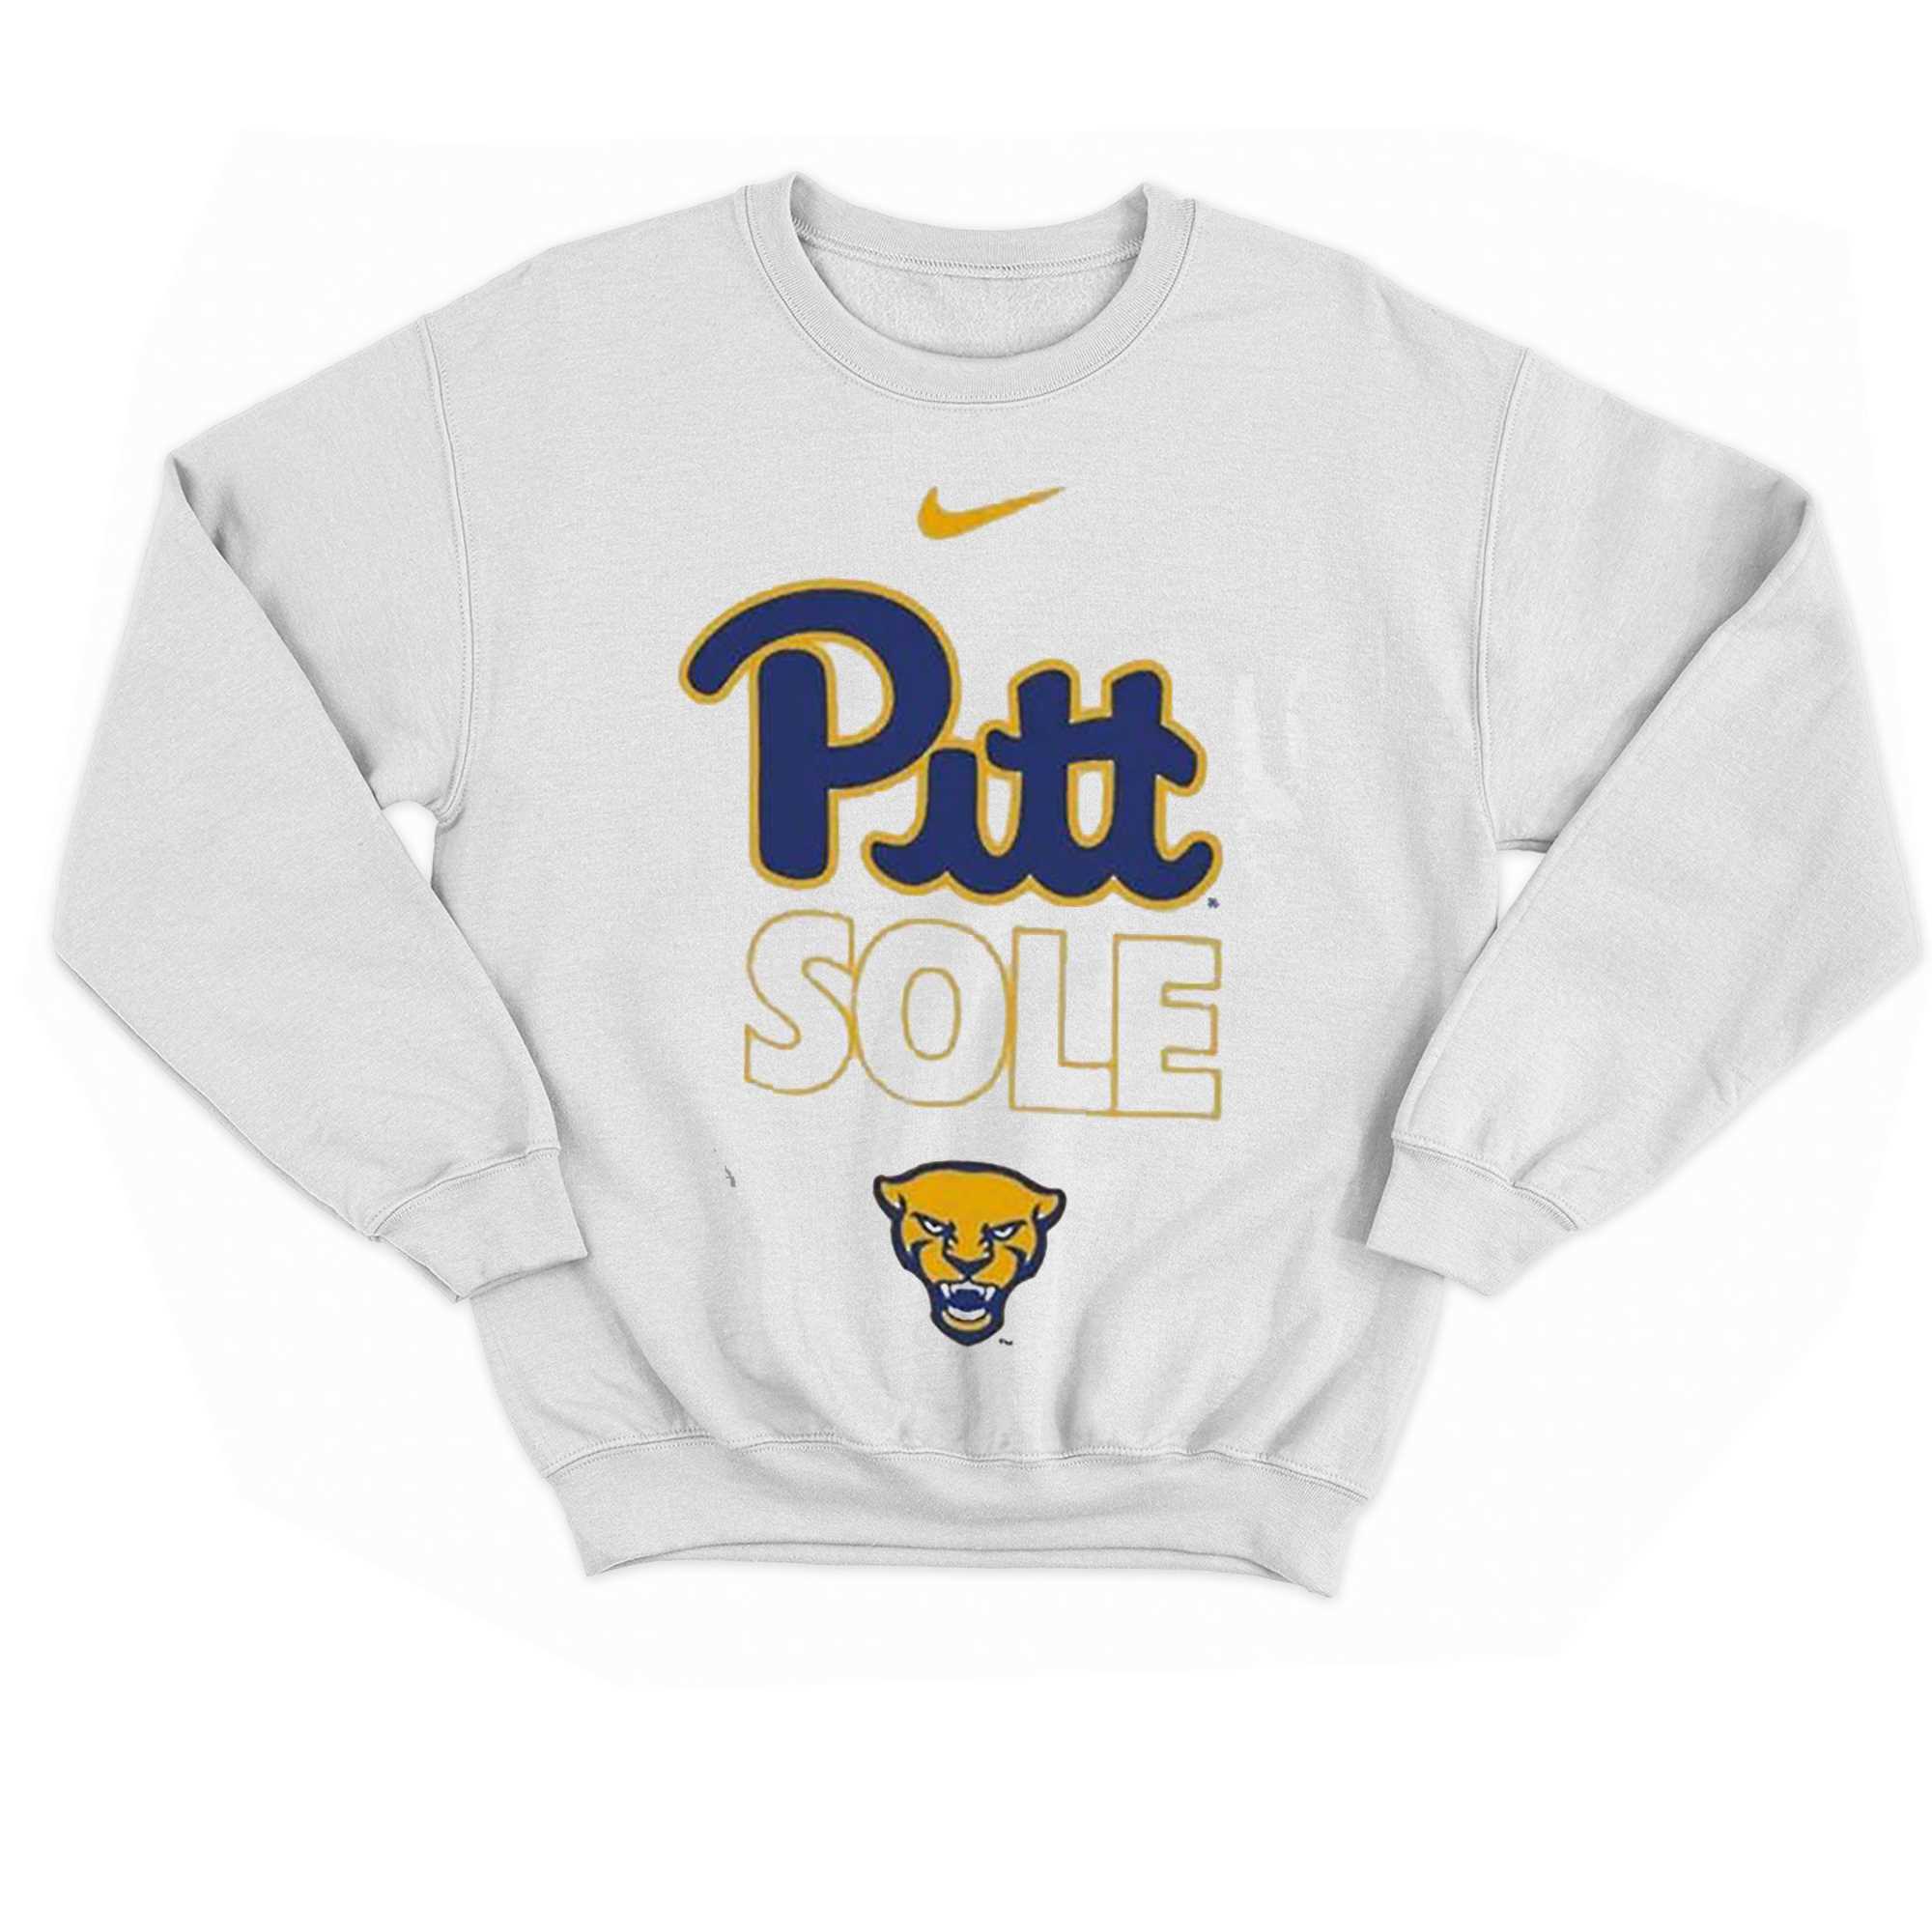 Pitt Panthers Basketball Nike Pitt Sole Shirt 